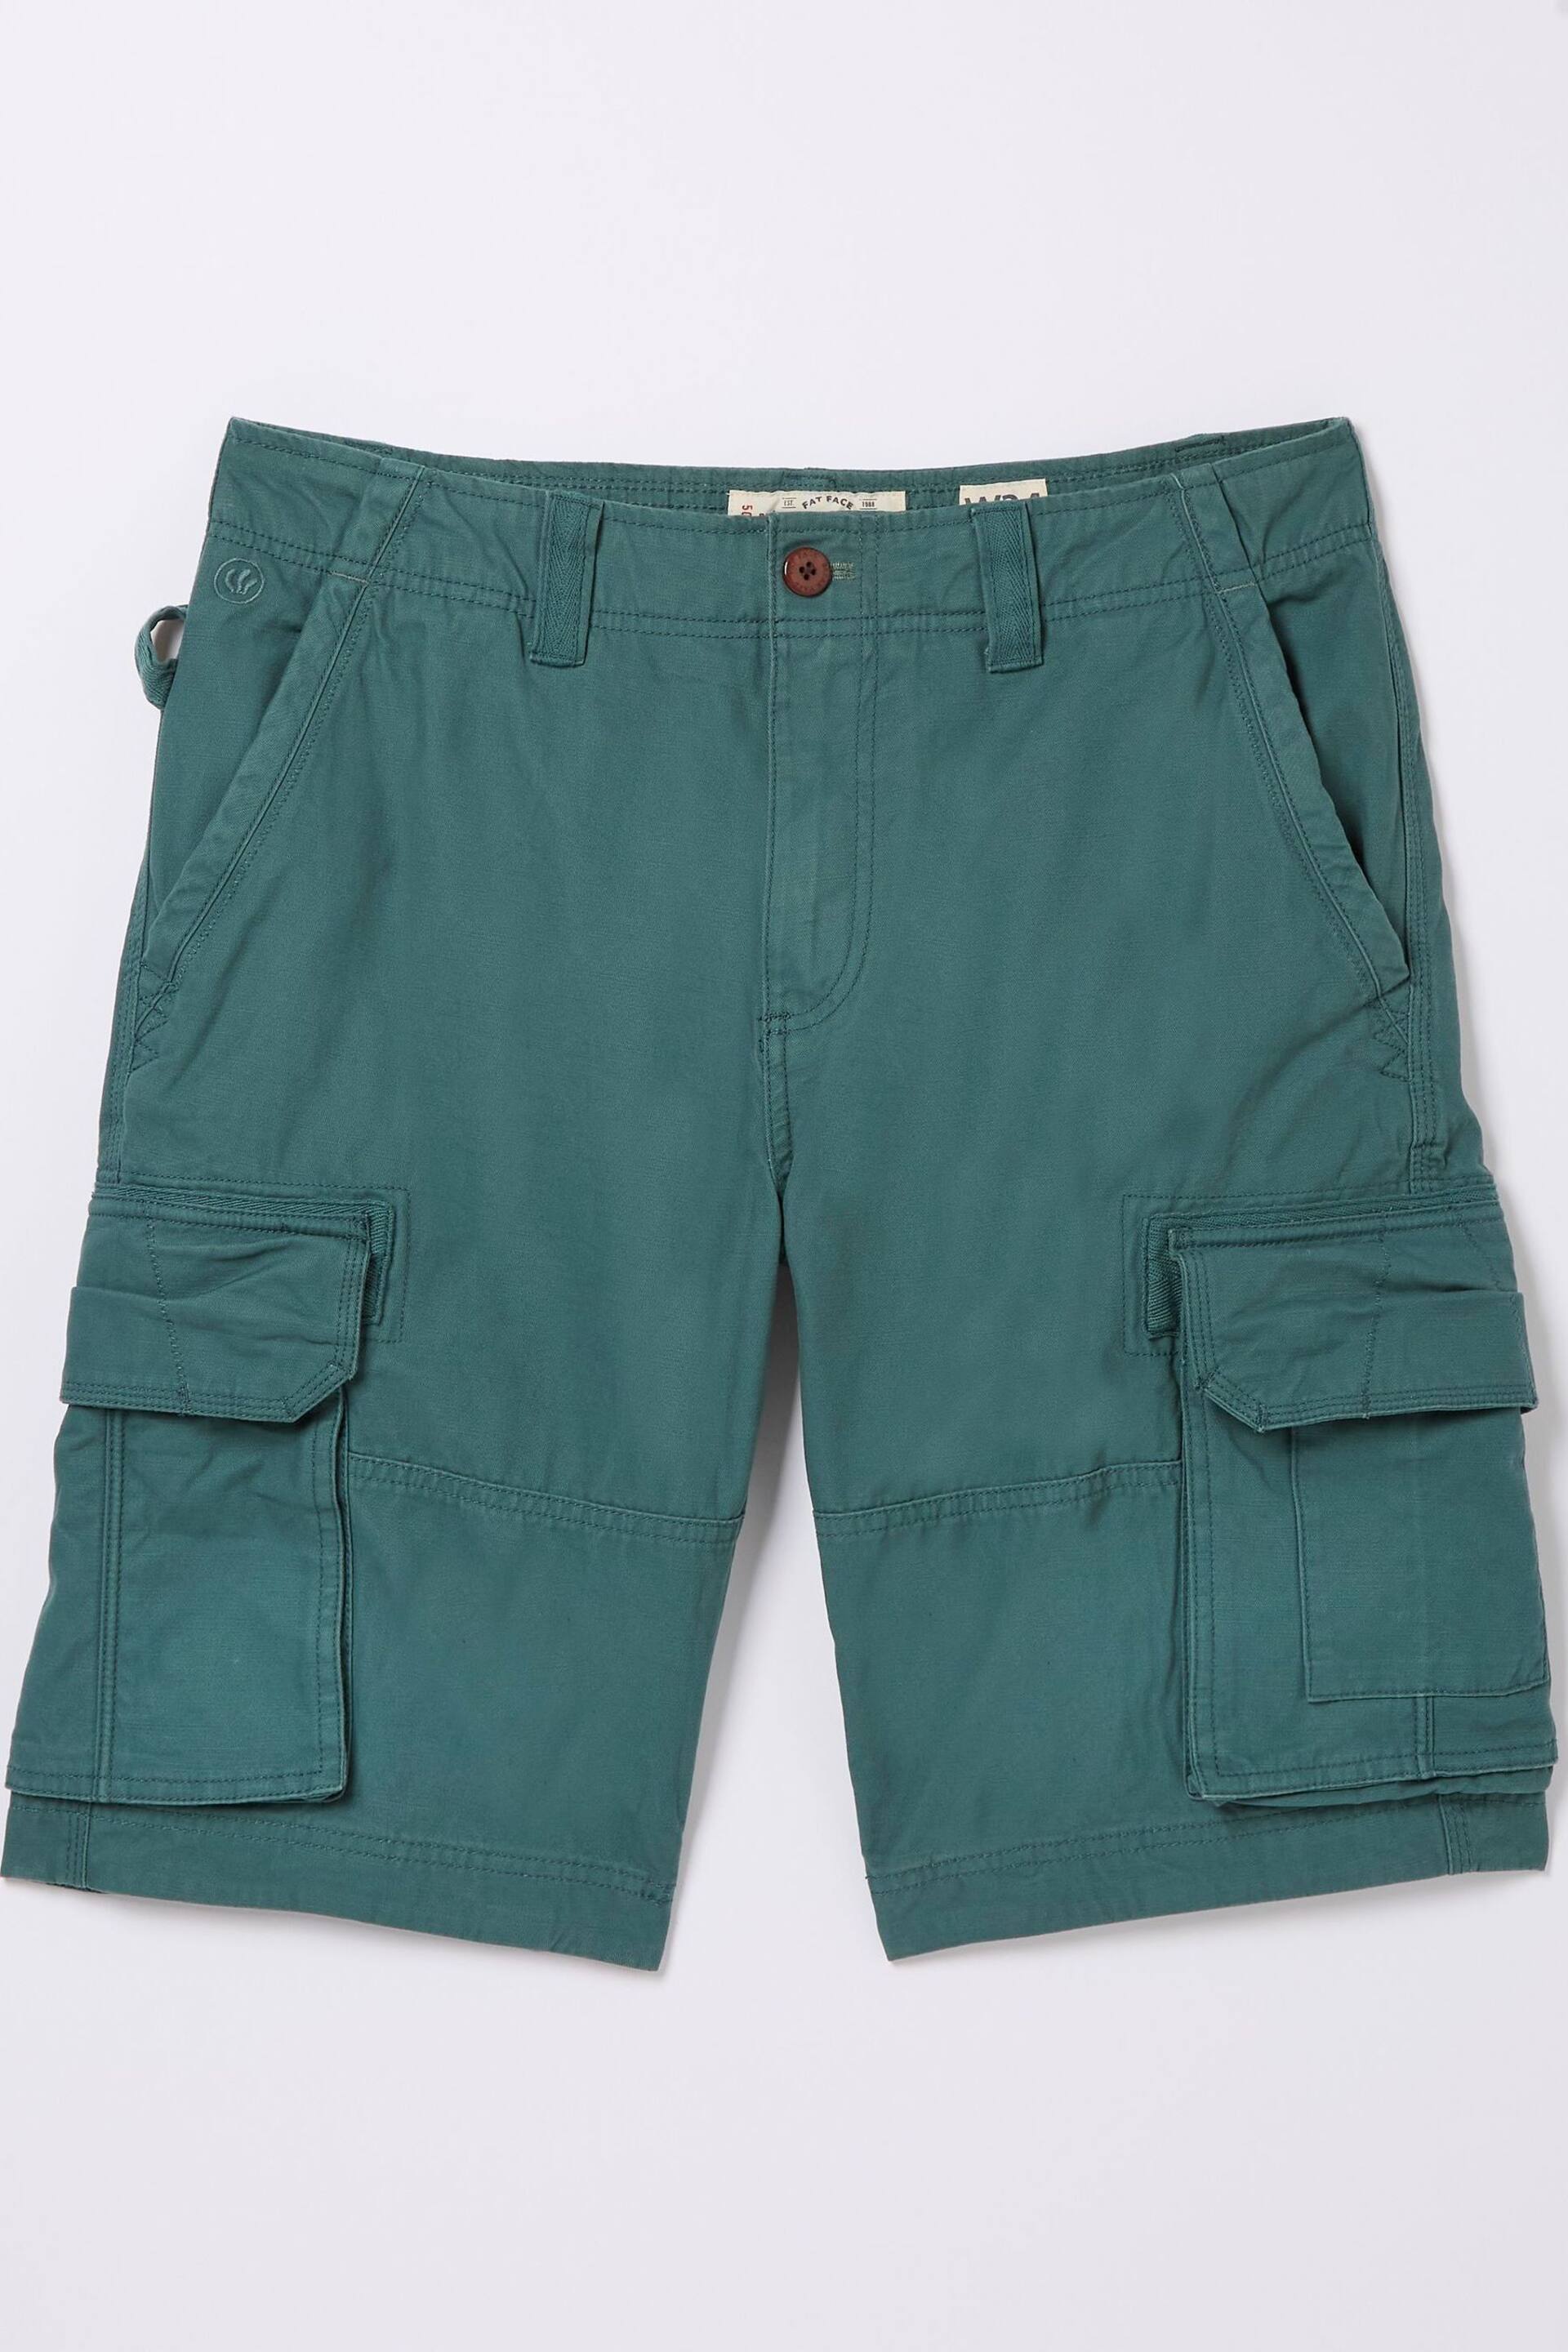 FatFace Green Cargo Shorts - Image 5 of 5